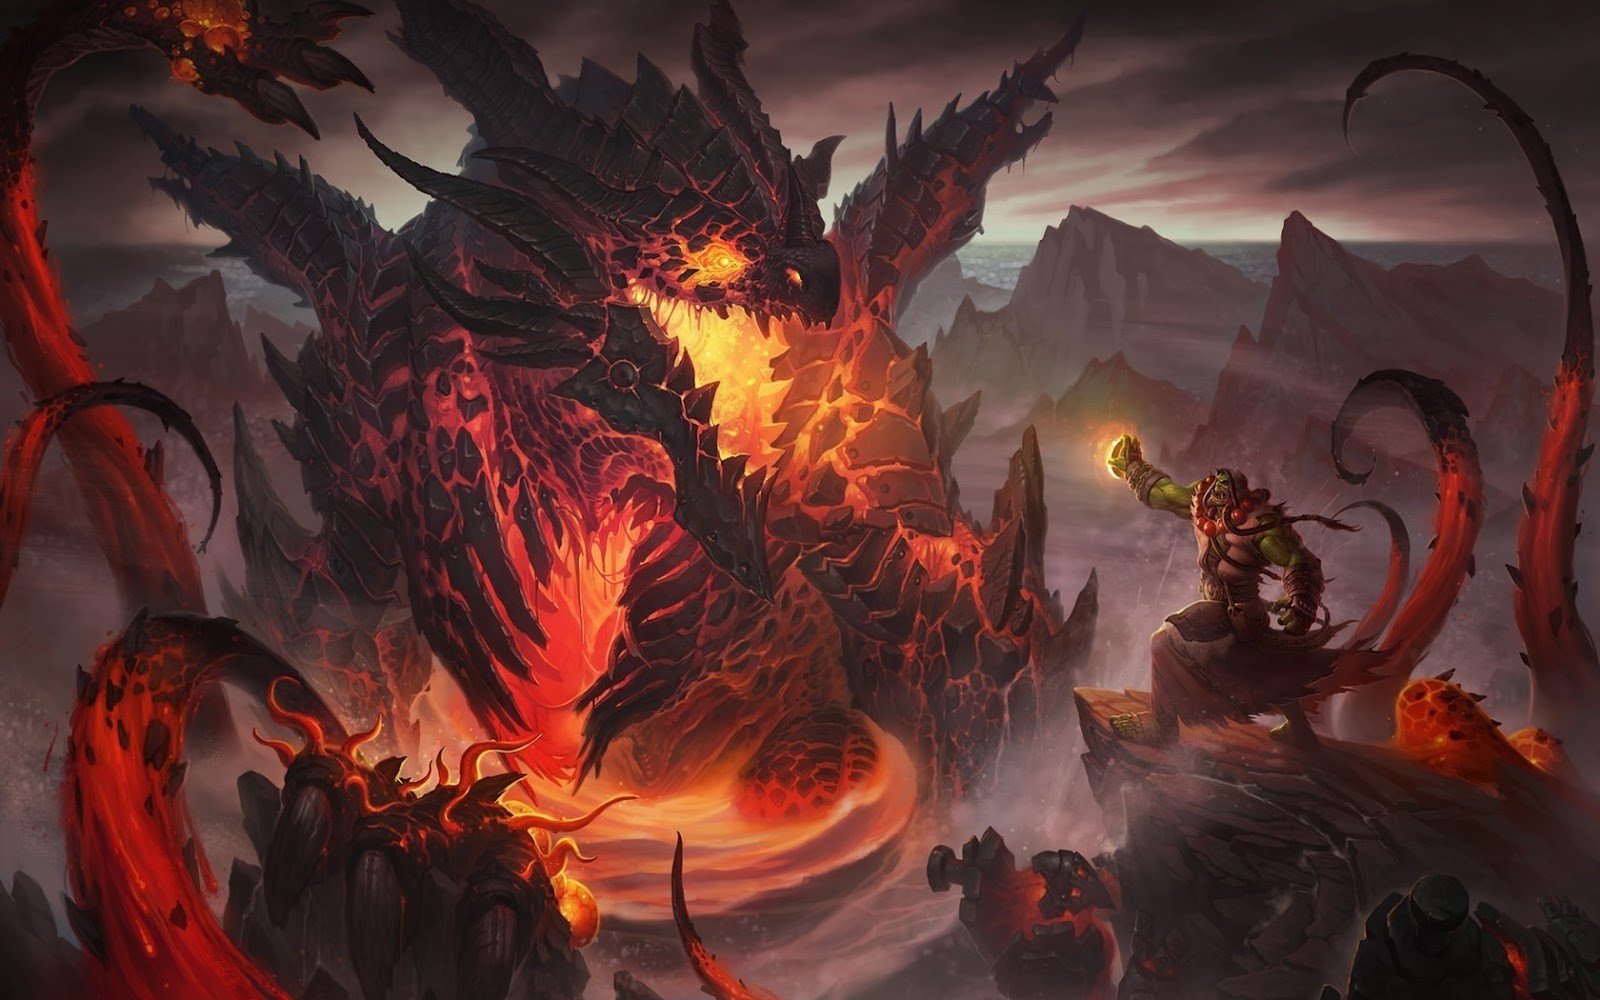 High Resolution Wallpaper | World Of Warcraft: Cataclysm 1600x1000 px